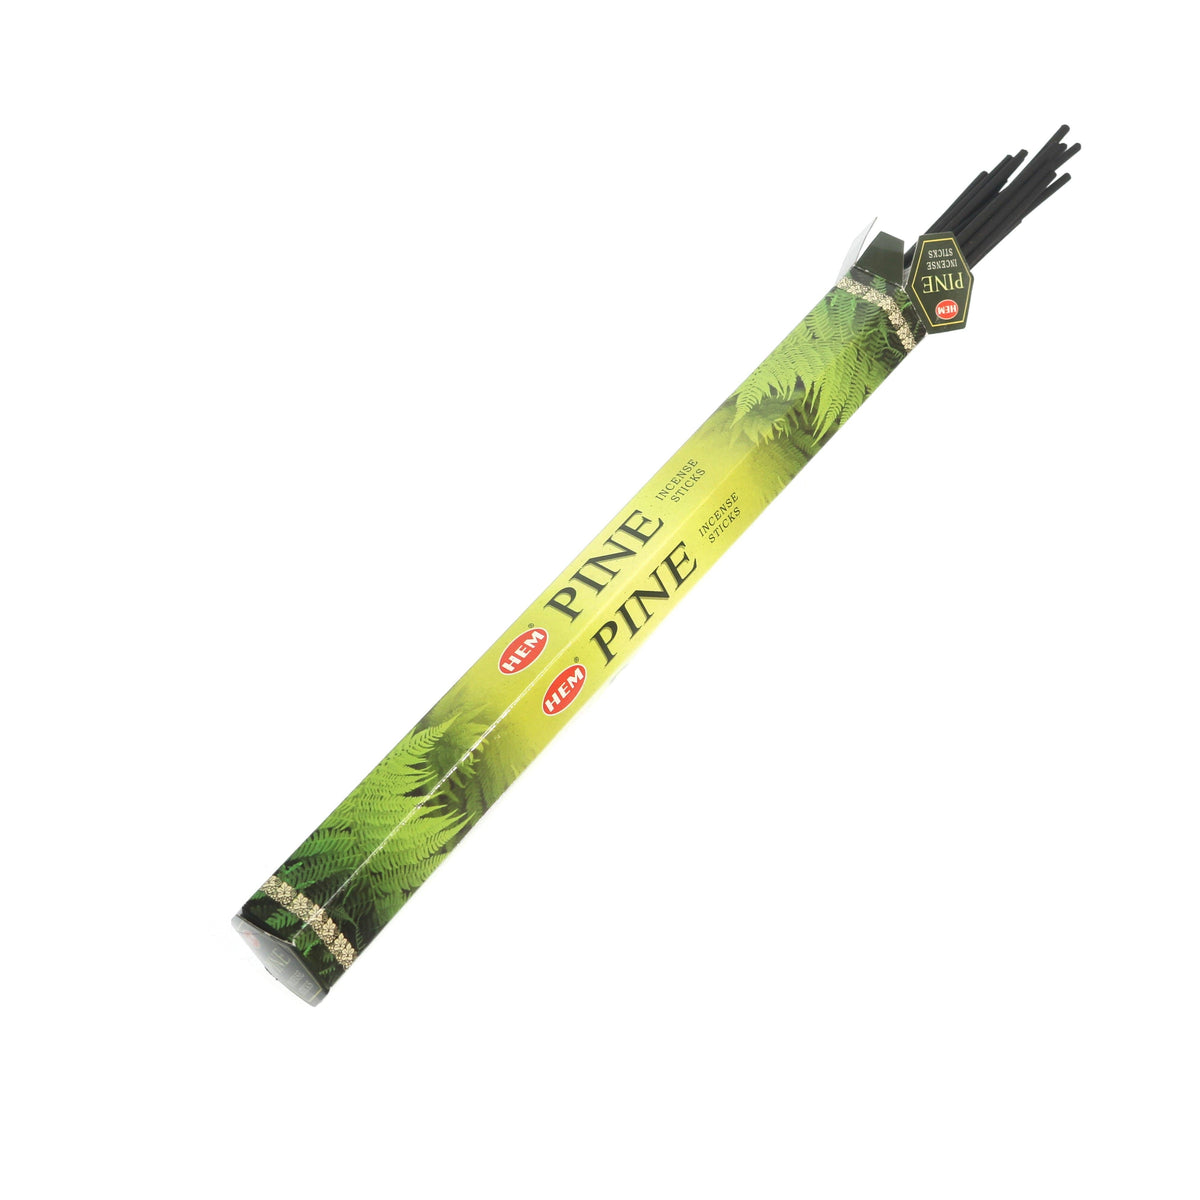 Pine Hem Incense Sticks - 20 Sticks